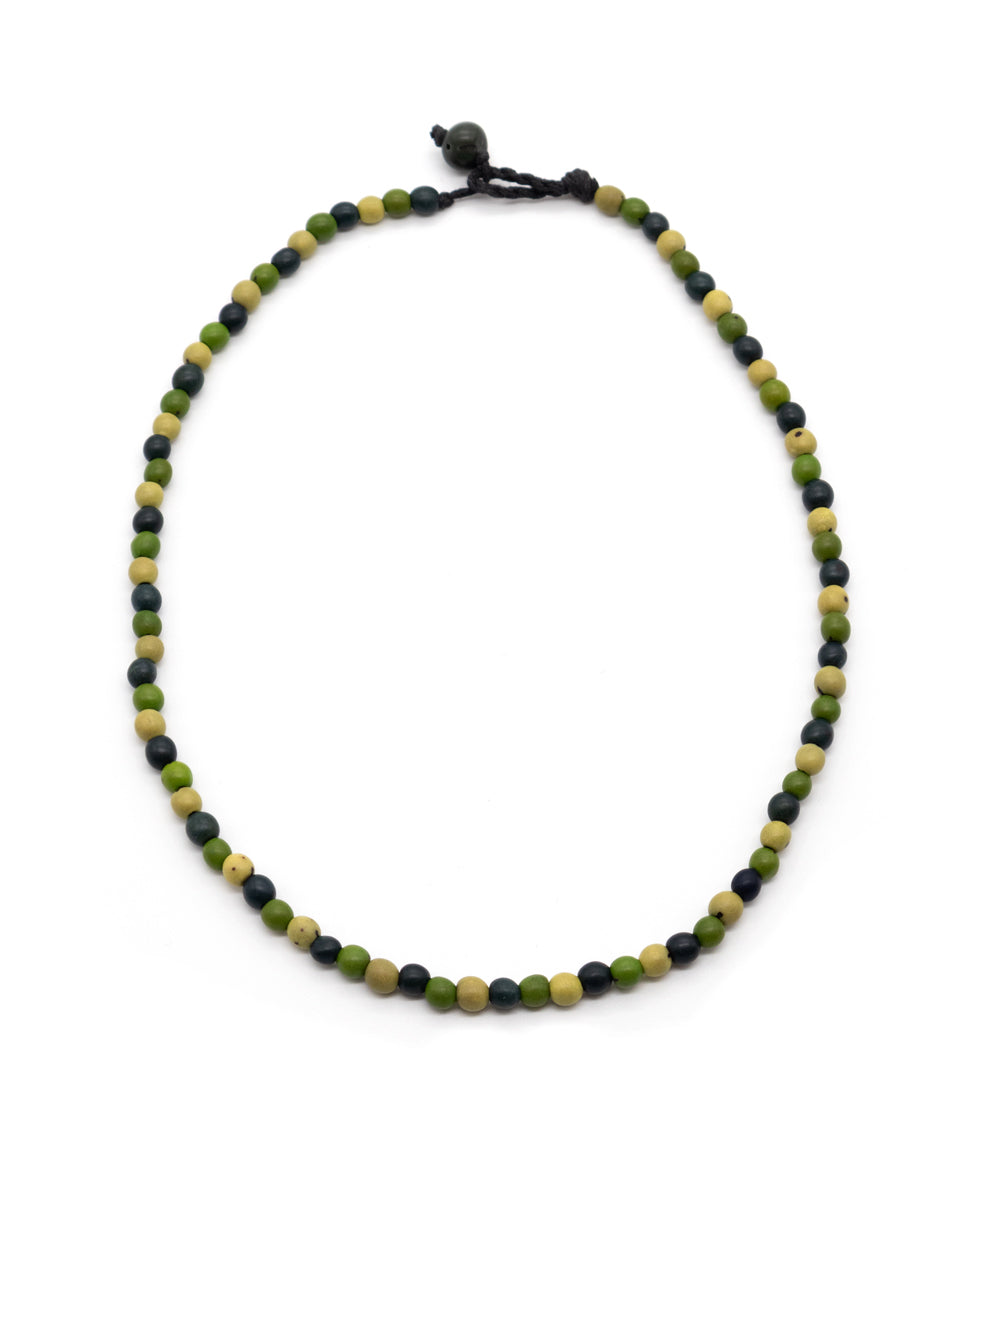 Halskette Chira grün - aus den Chirilla-Samen von La Tagua